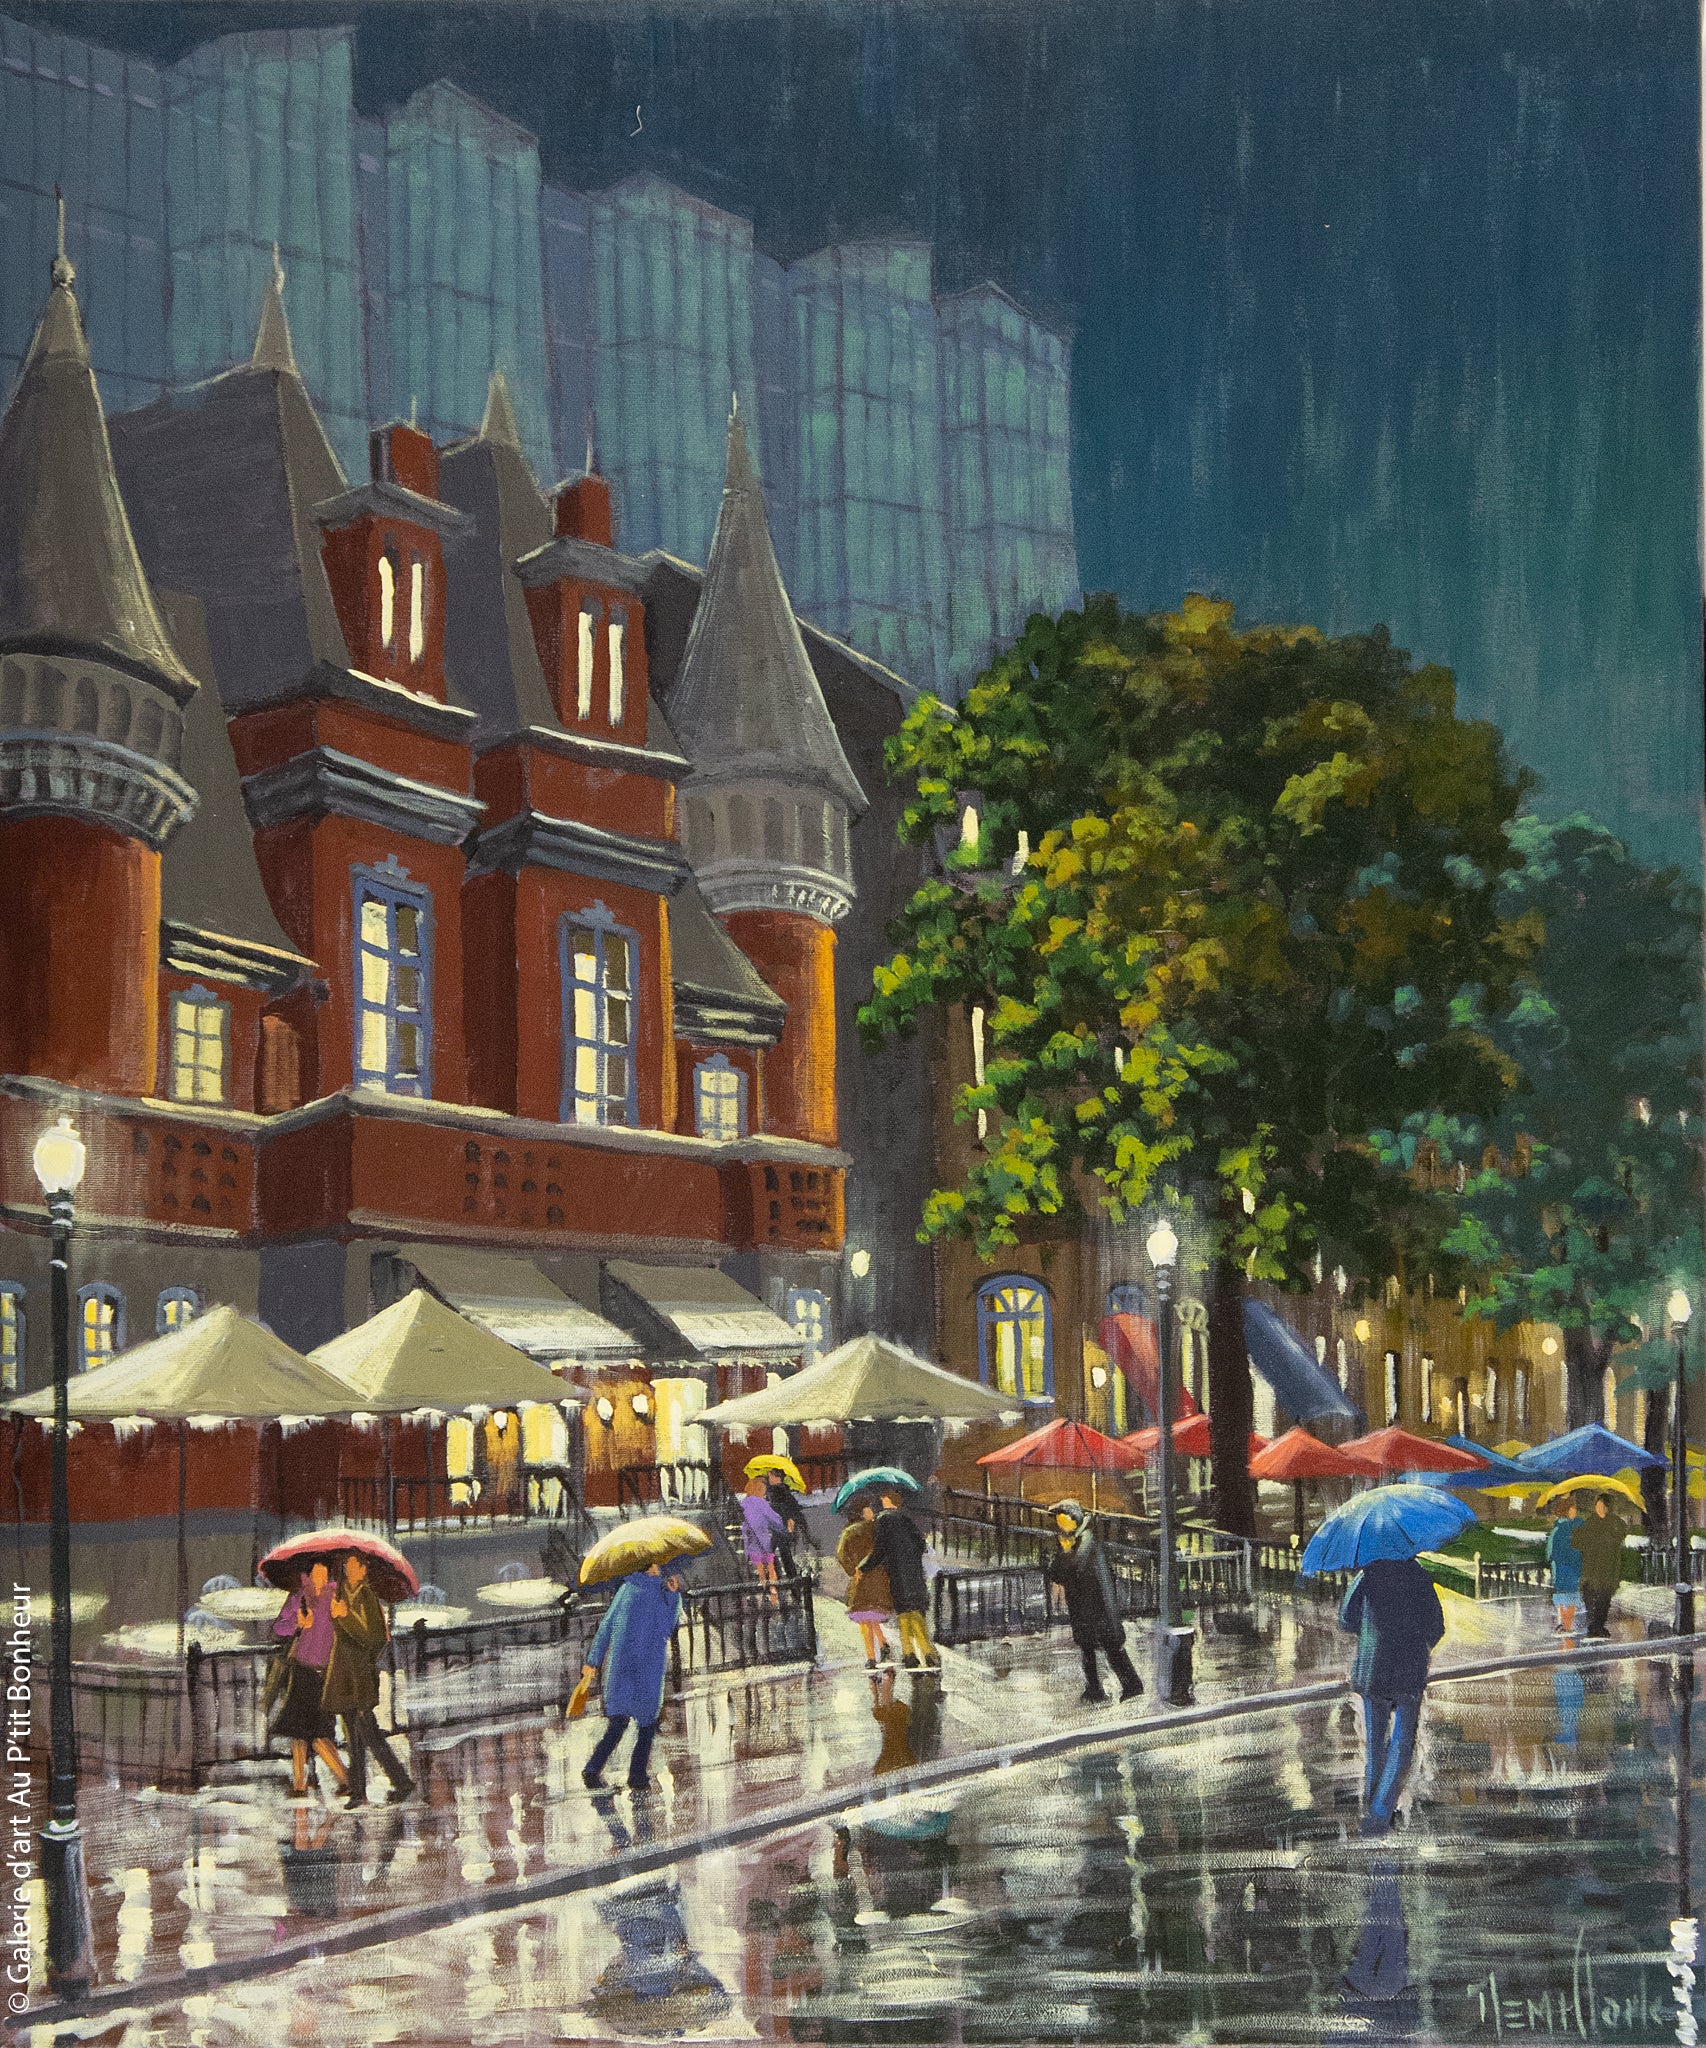 Rémi Clark | Tout en parasols et parapluies, Grande-Allée, Québec